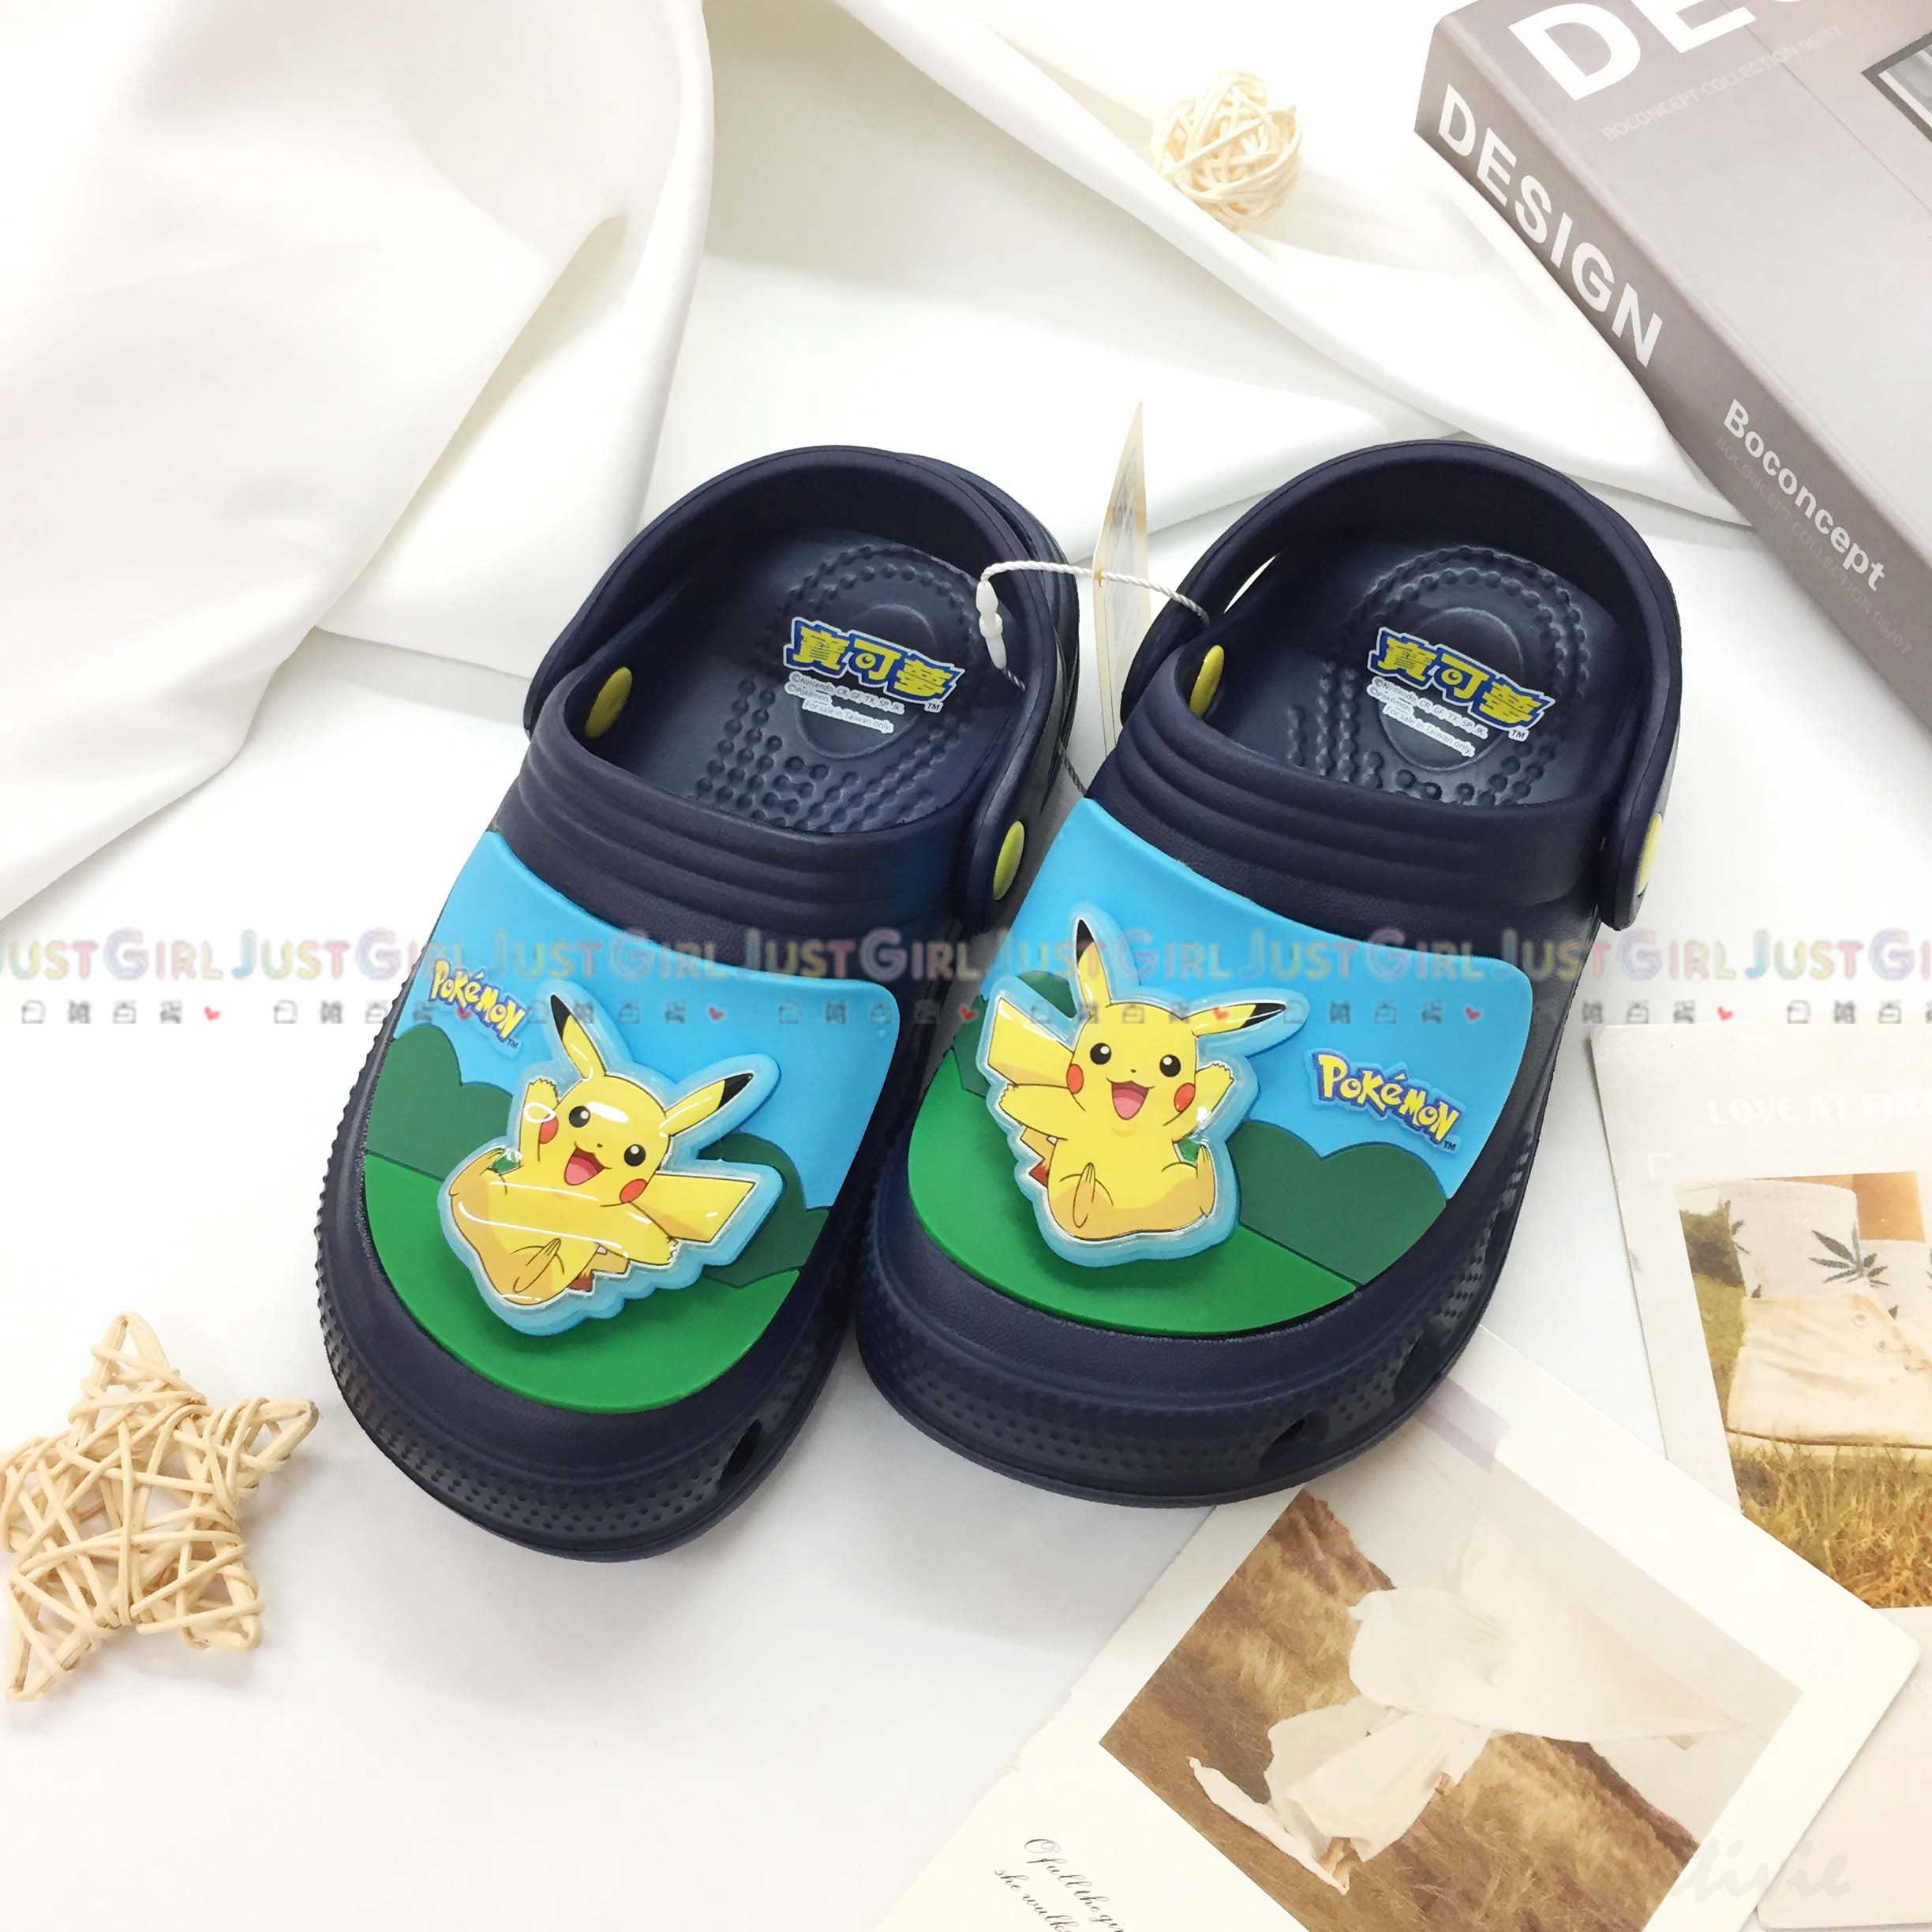 預購-兒童花園鞋 17-21cm-皮卡丘 神奇寶貝 寶可夢 POKEMON 正版授權